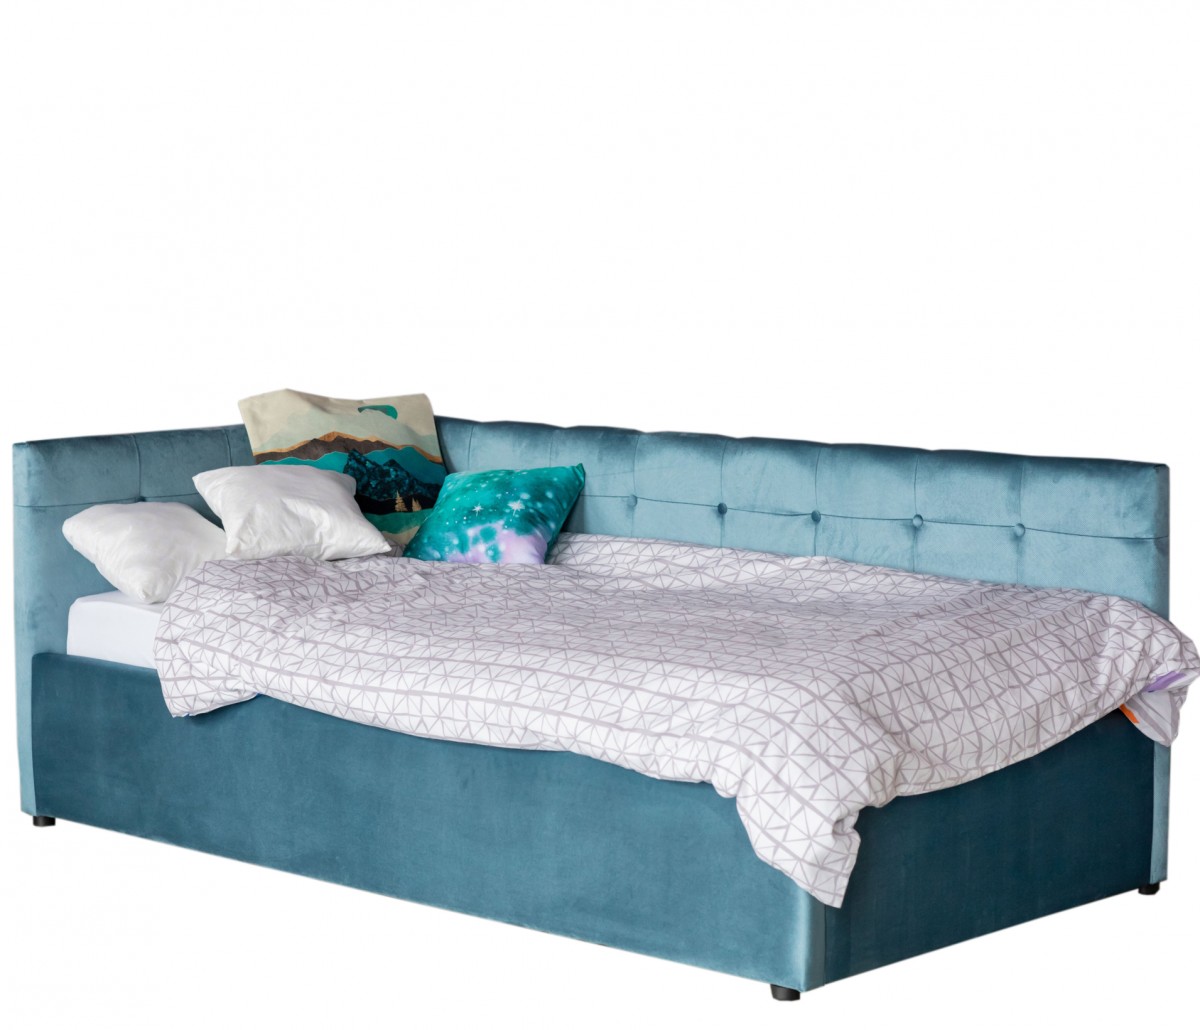 Односпальная кровать-тахта Colibri 800 синяя с подъемным механизмом